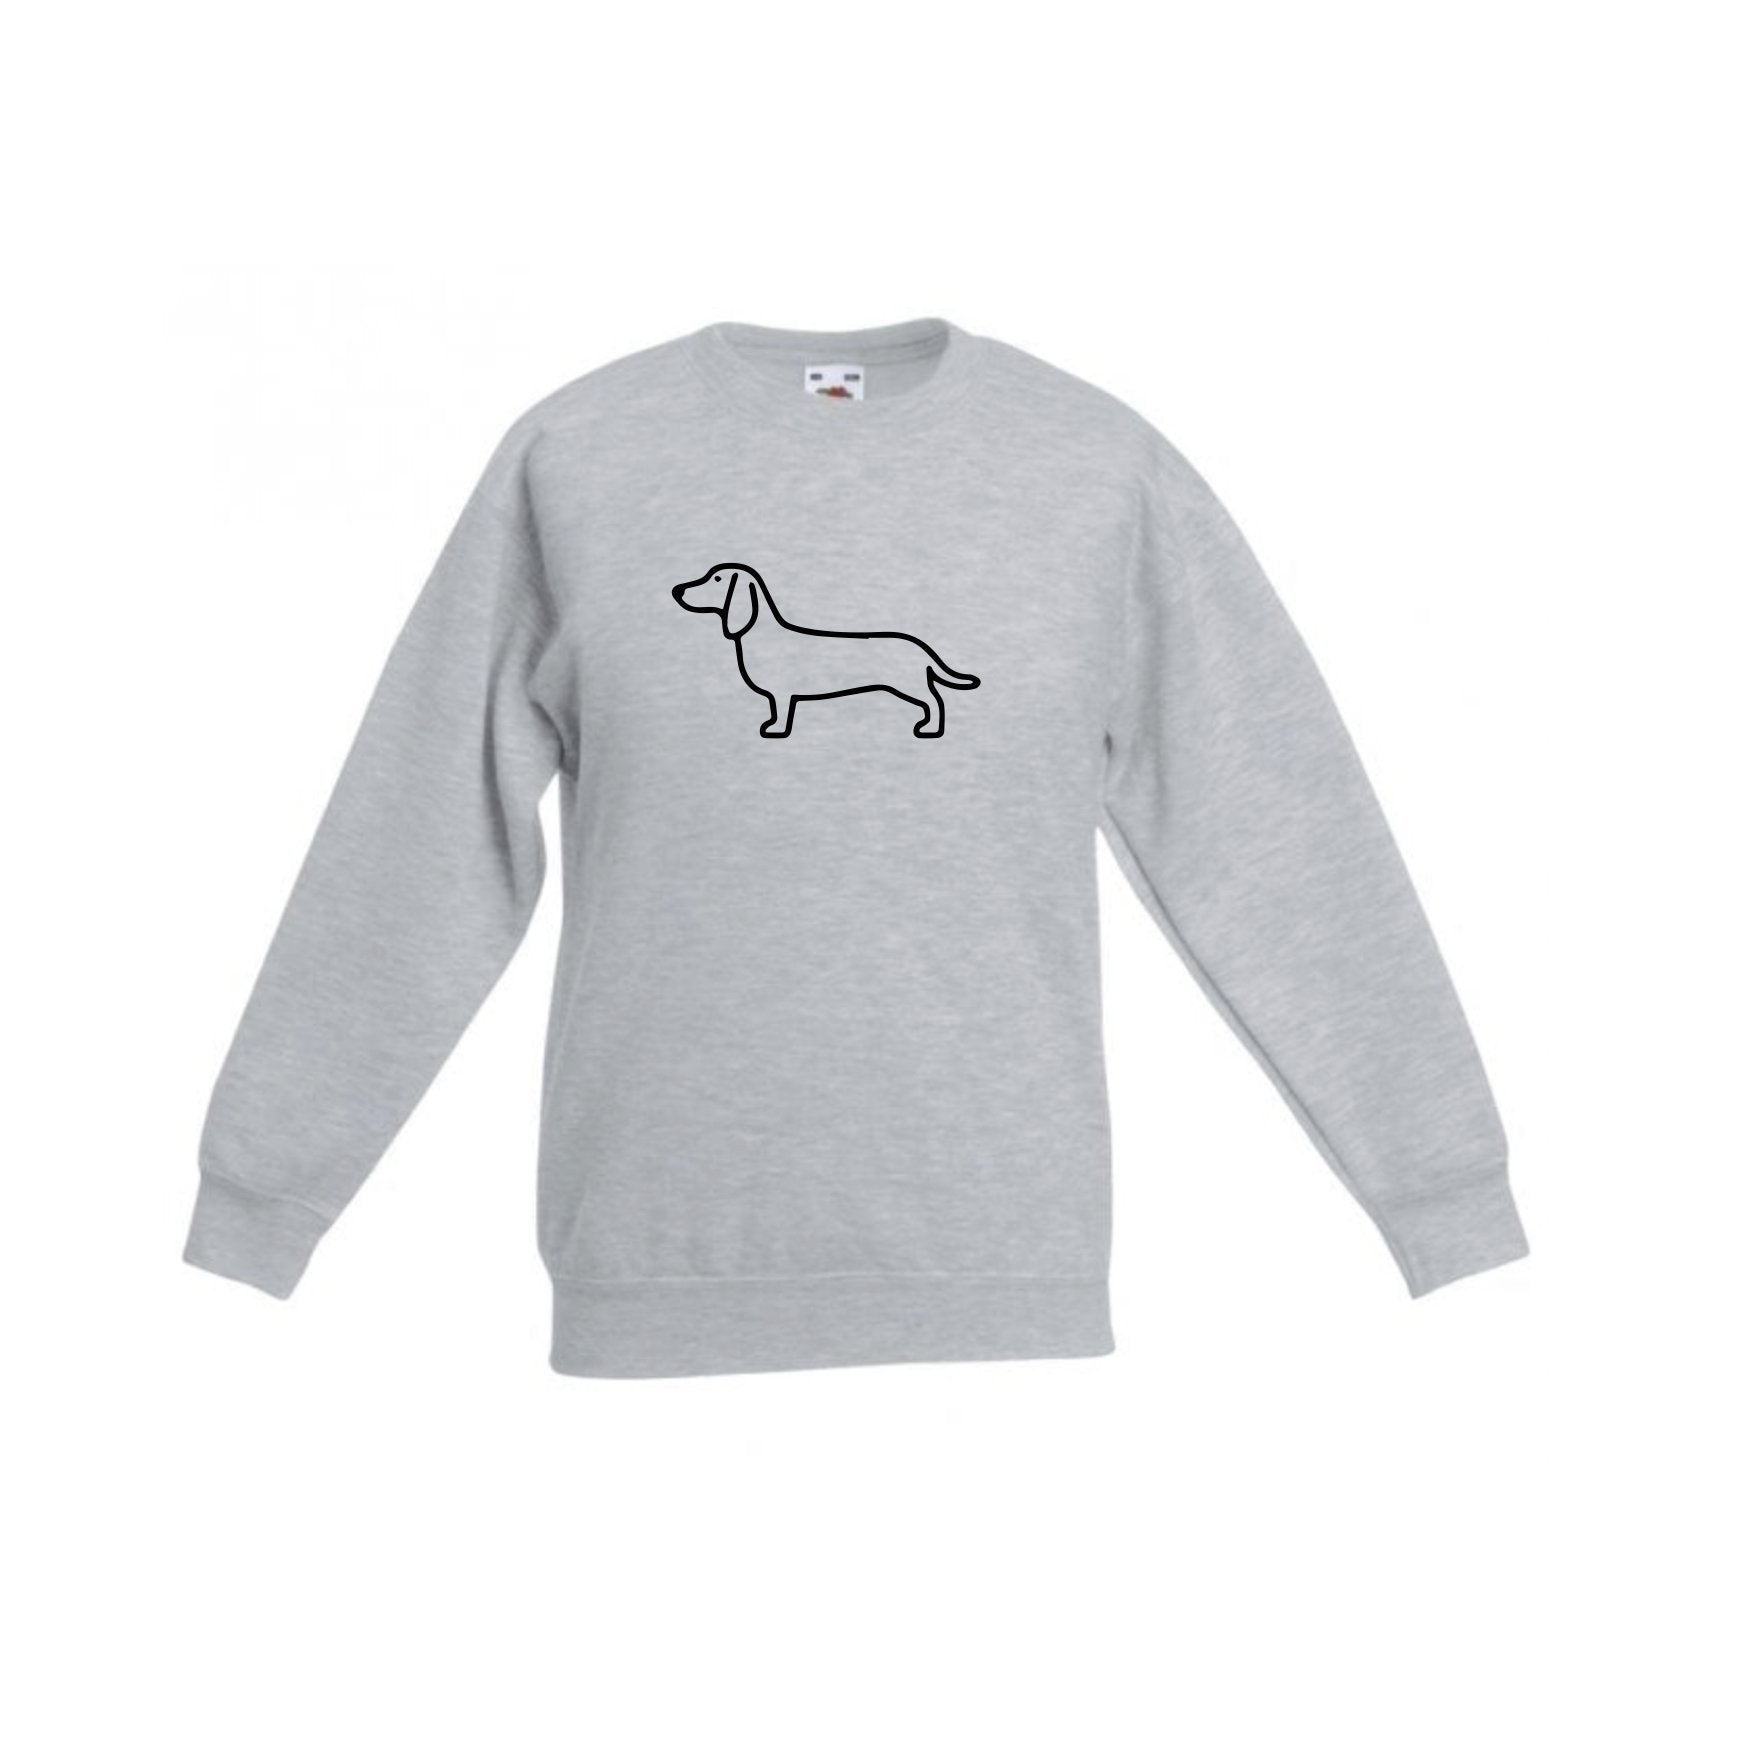 Dachshund Children's Sweatshirt - Pooch-